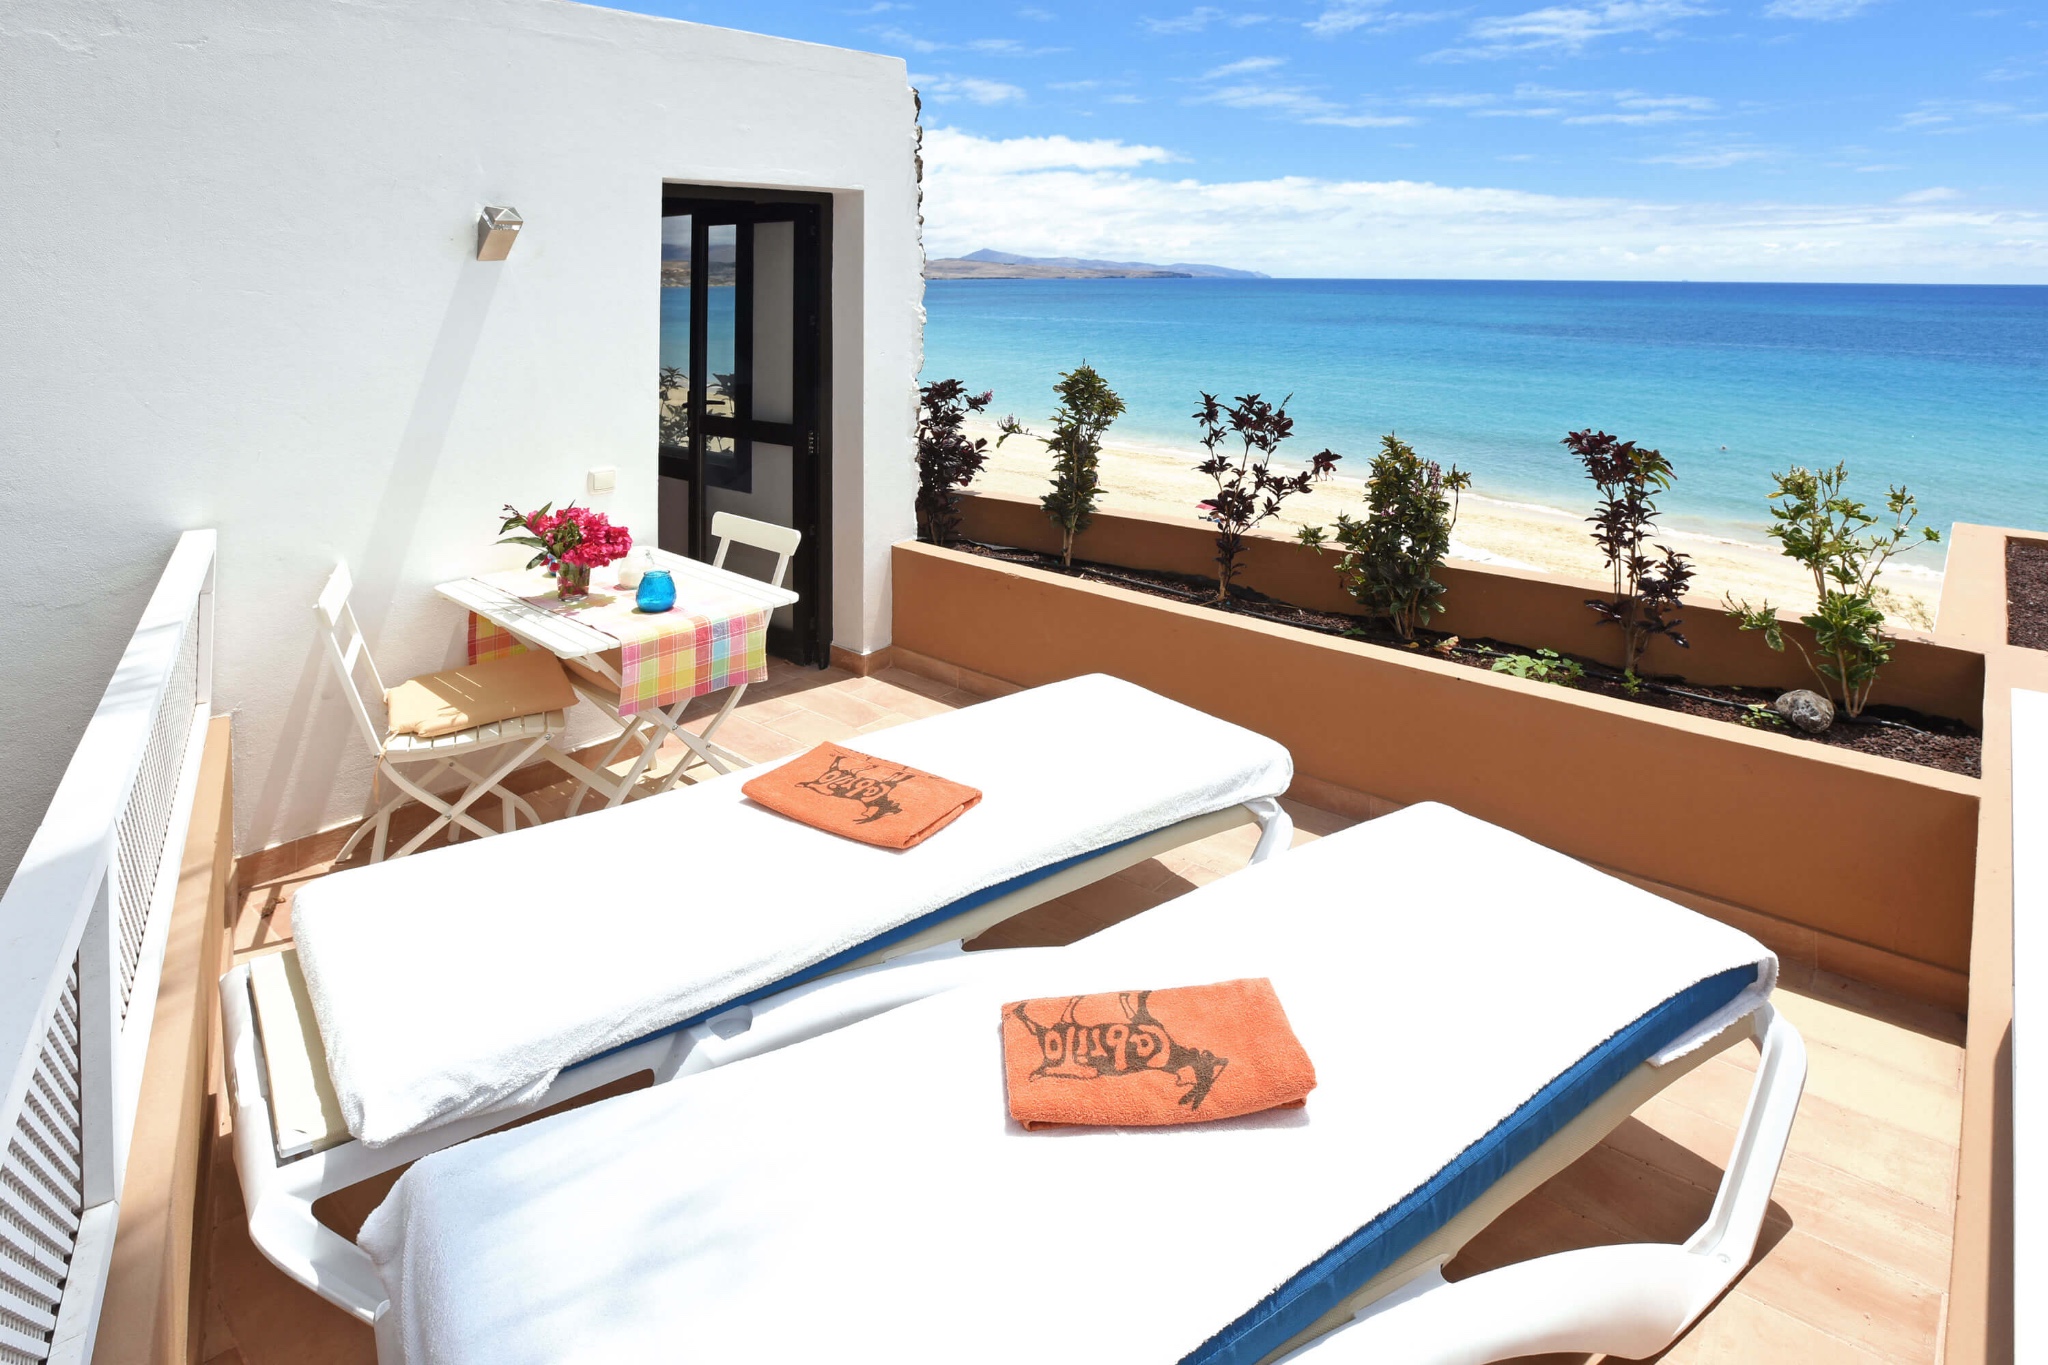 Nowoczesny dom wakacyjny dla 2 osób znajduje się na plaży w Costa Calma z widokiem na morze